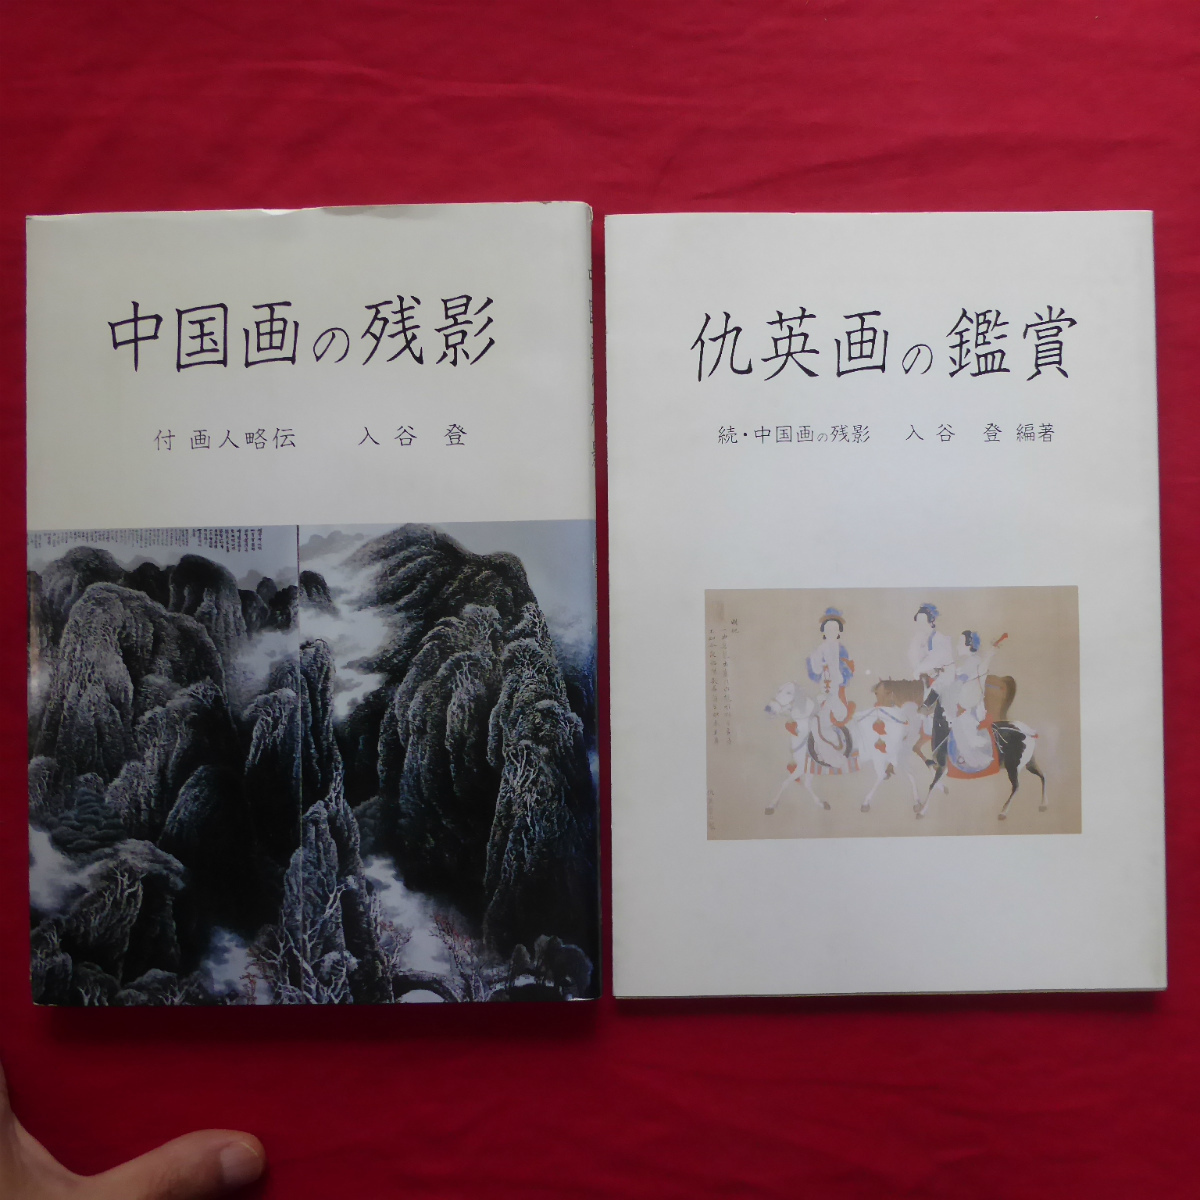 b9 सूचीपत्र [चीनी चित्रकला के बचे हुए निशान: जारी], किउ यिंग की पेंटिंग्स की सराहना - जारी: चीनी पेंटिंग्स के बाद के चित्र / 2 पुस्तकों का सेट / इरिया नोबोरू और तोसेनरो द्वारा संपादित, चित्रकारी, कला पुस्तक, संग्रह, सूची